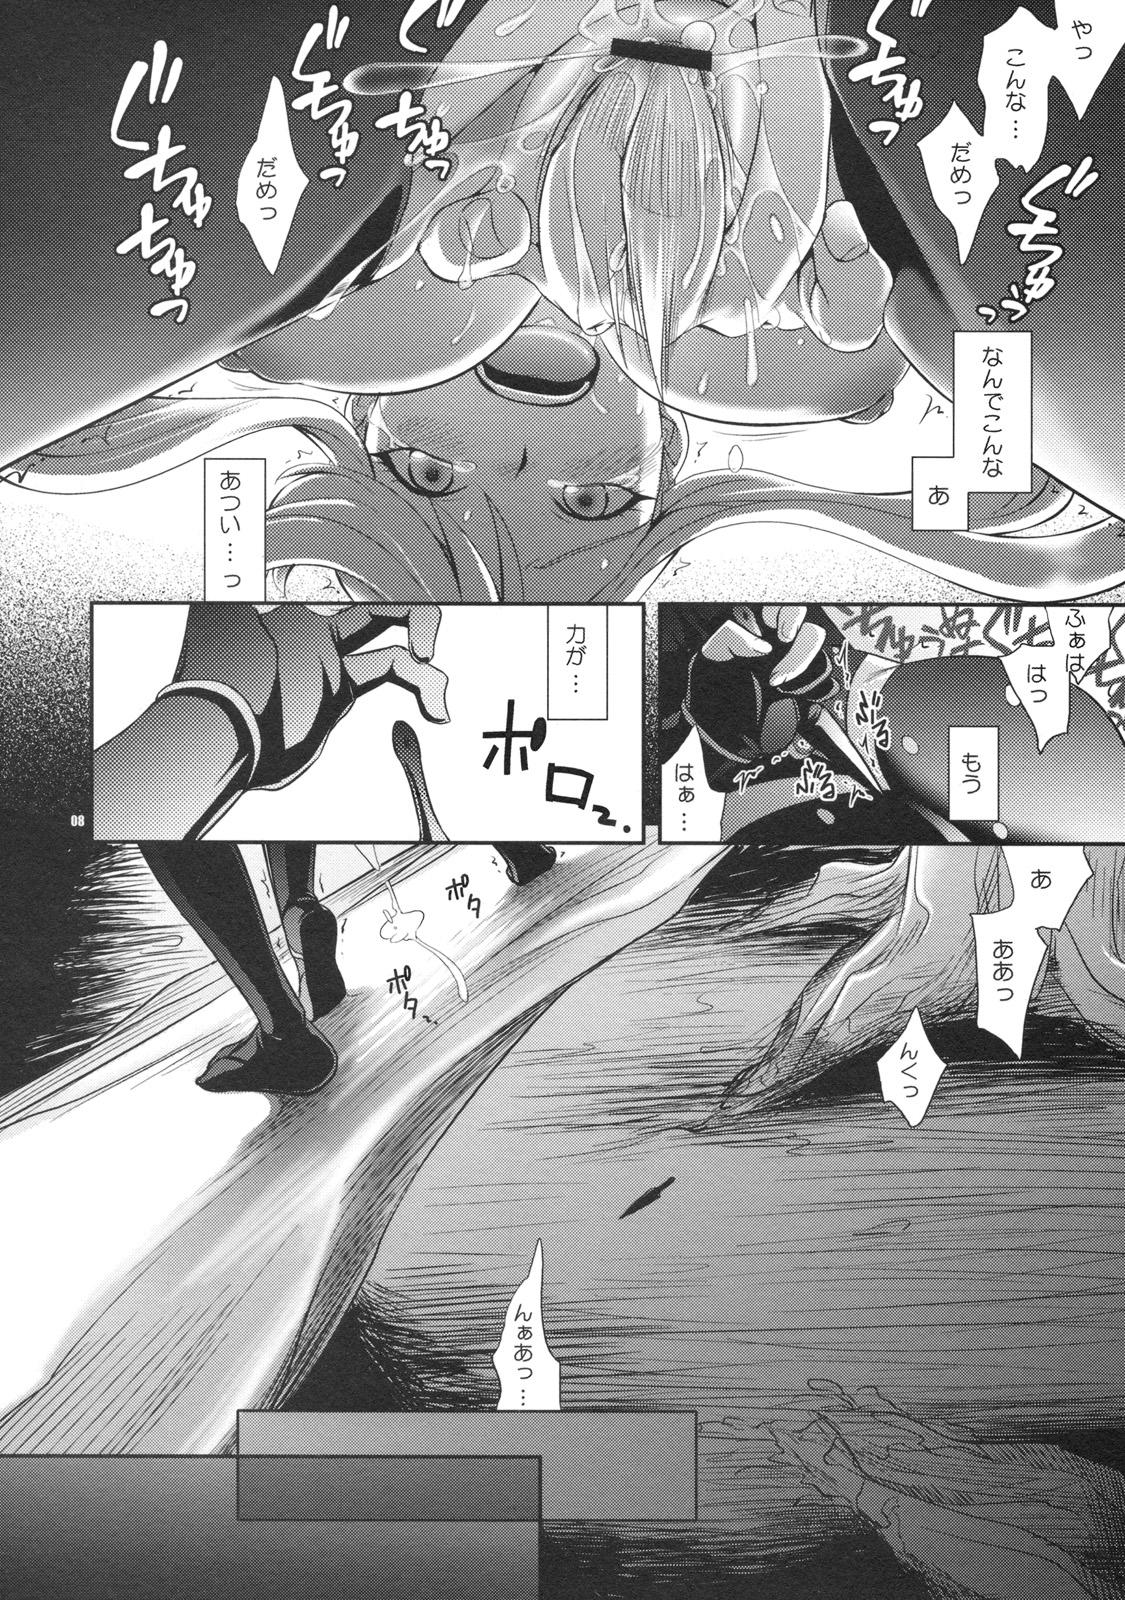 Licking Oosame Kudasai Kenshin-sama! - Sengoku basara Assfucking - Page 7